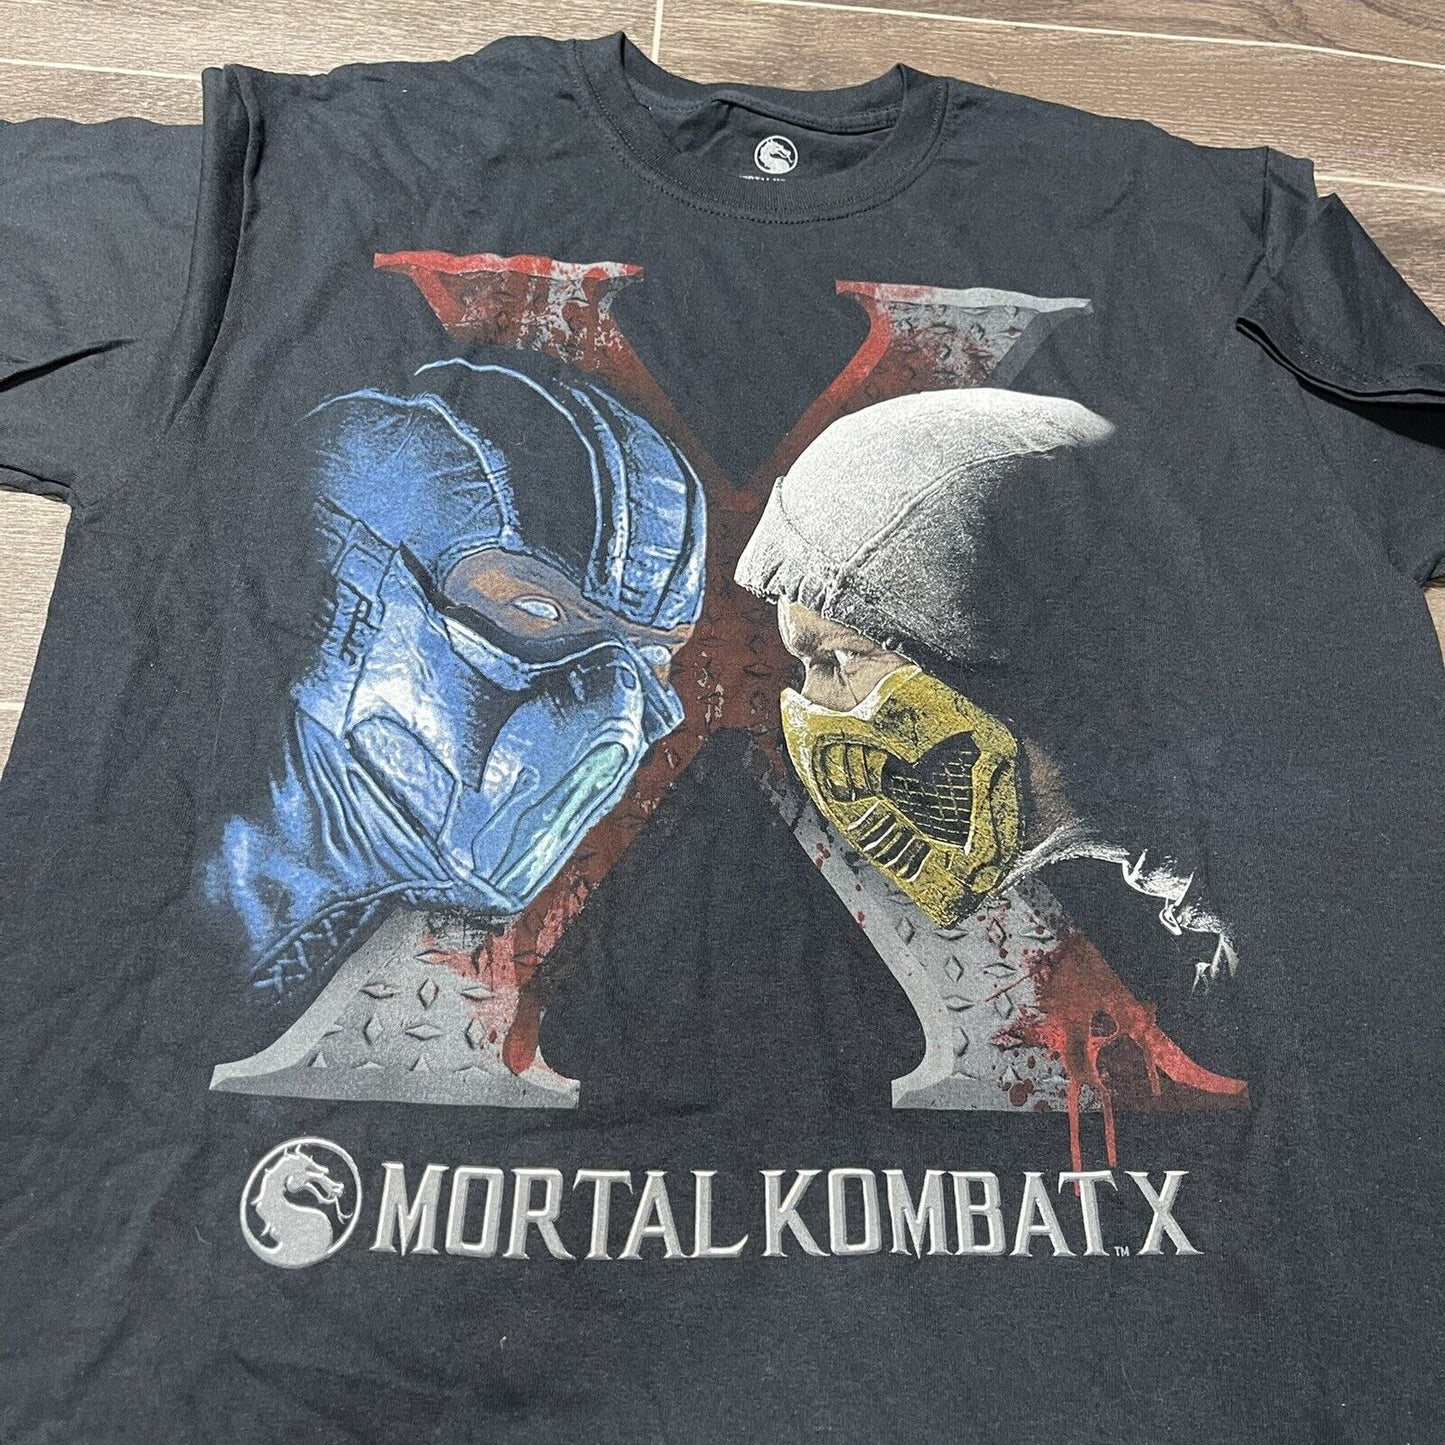 NEW Mortal Kombat X Scorpion VS Sub-Zero Men's Large T-Shirt Graphic Tee L 2015